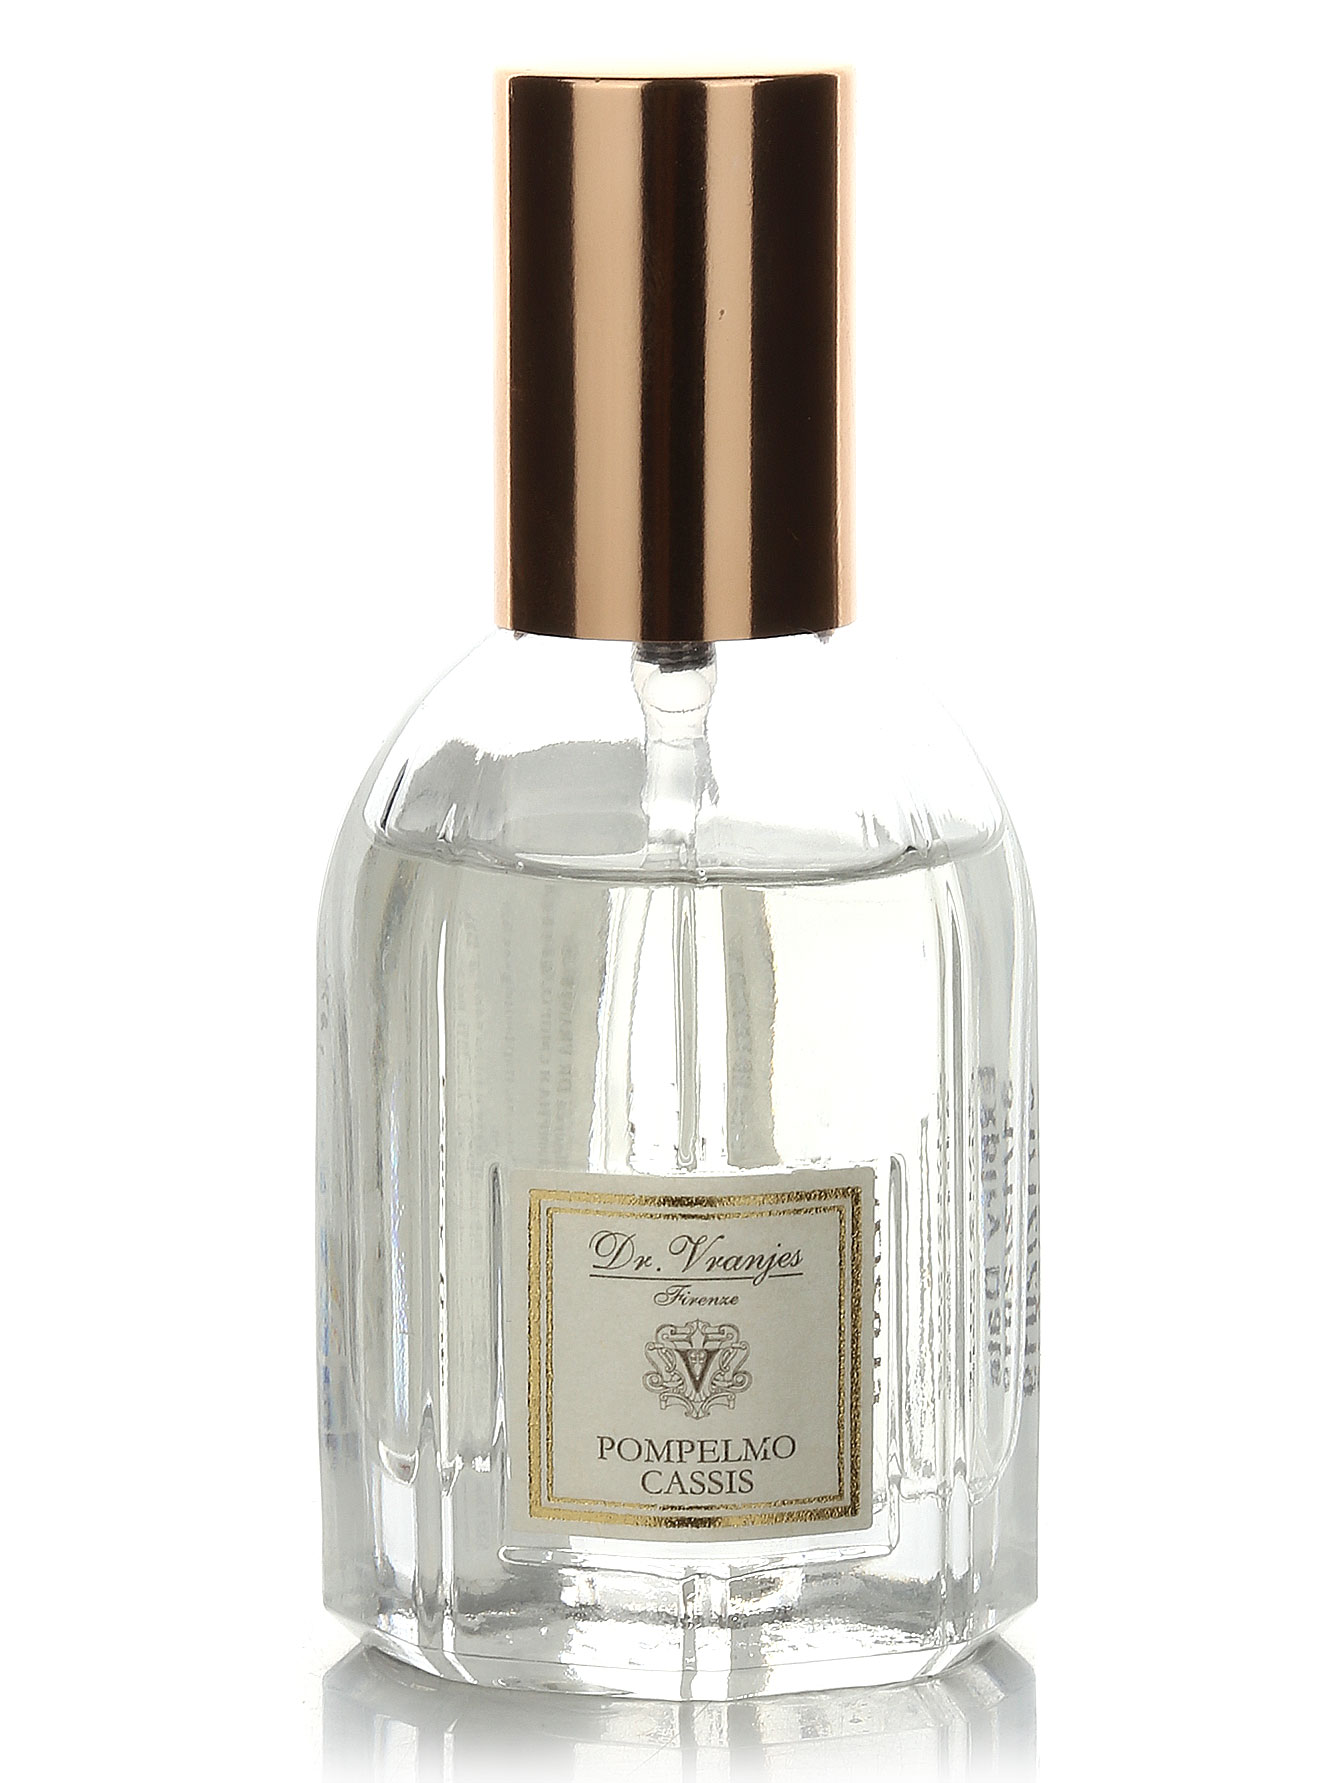  Подарочный набор Duomo Pompelmo Cassis - Home Fragrance - Общий вид